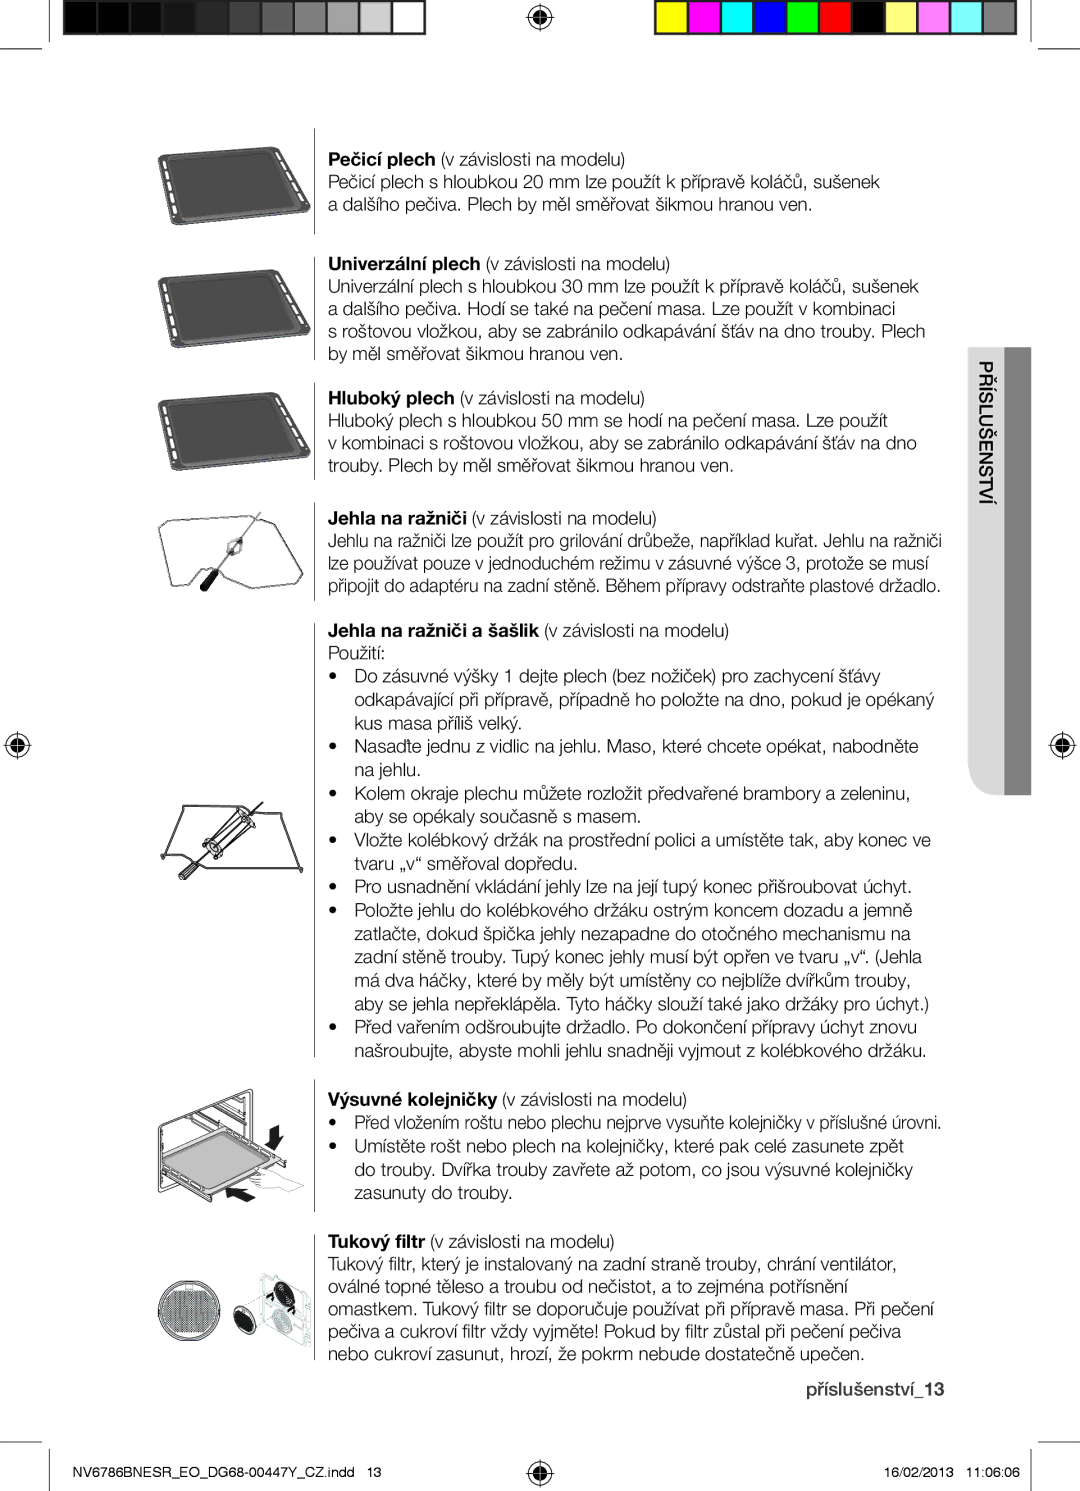 Samsung NV6786BNESR/EO manual Jehla na ražniči a šašlik v závislosti na modelu, Příslušenství13 